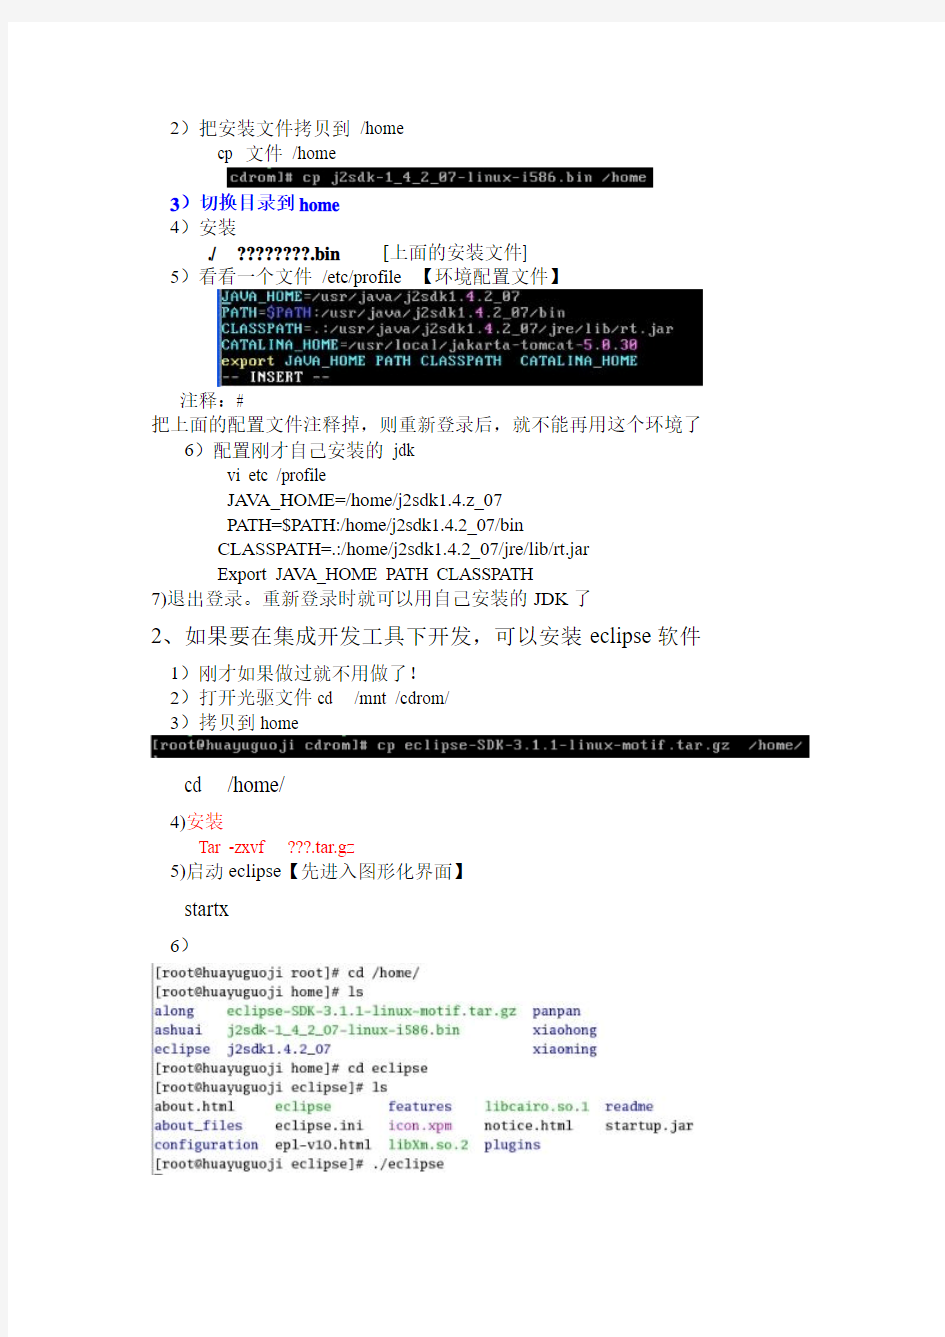 韩顺平linux教学视频学习笔记(二)